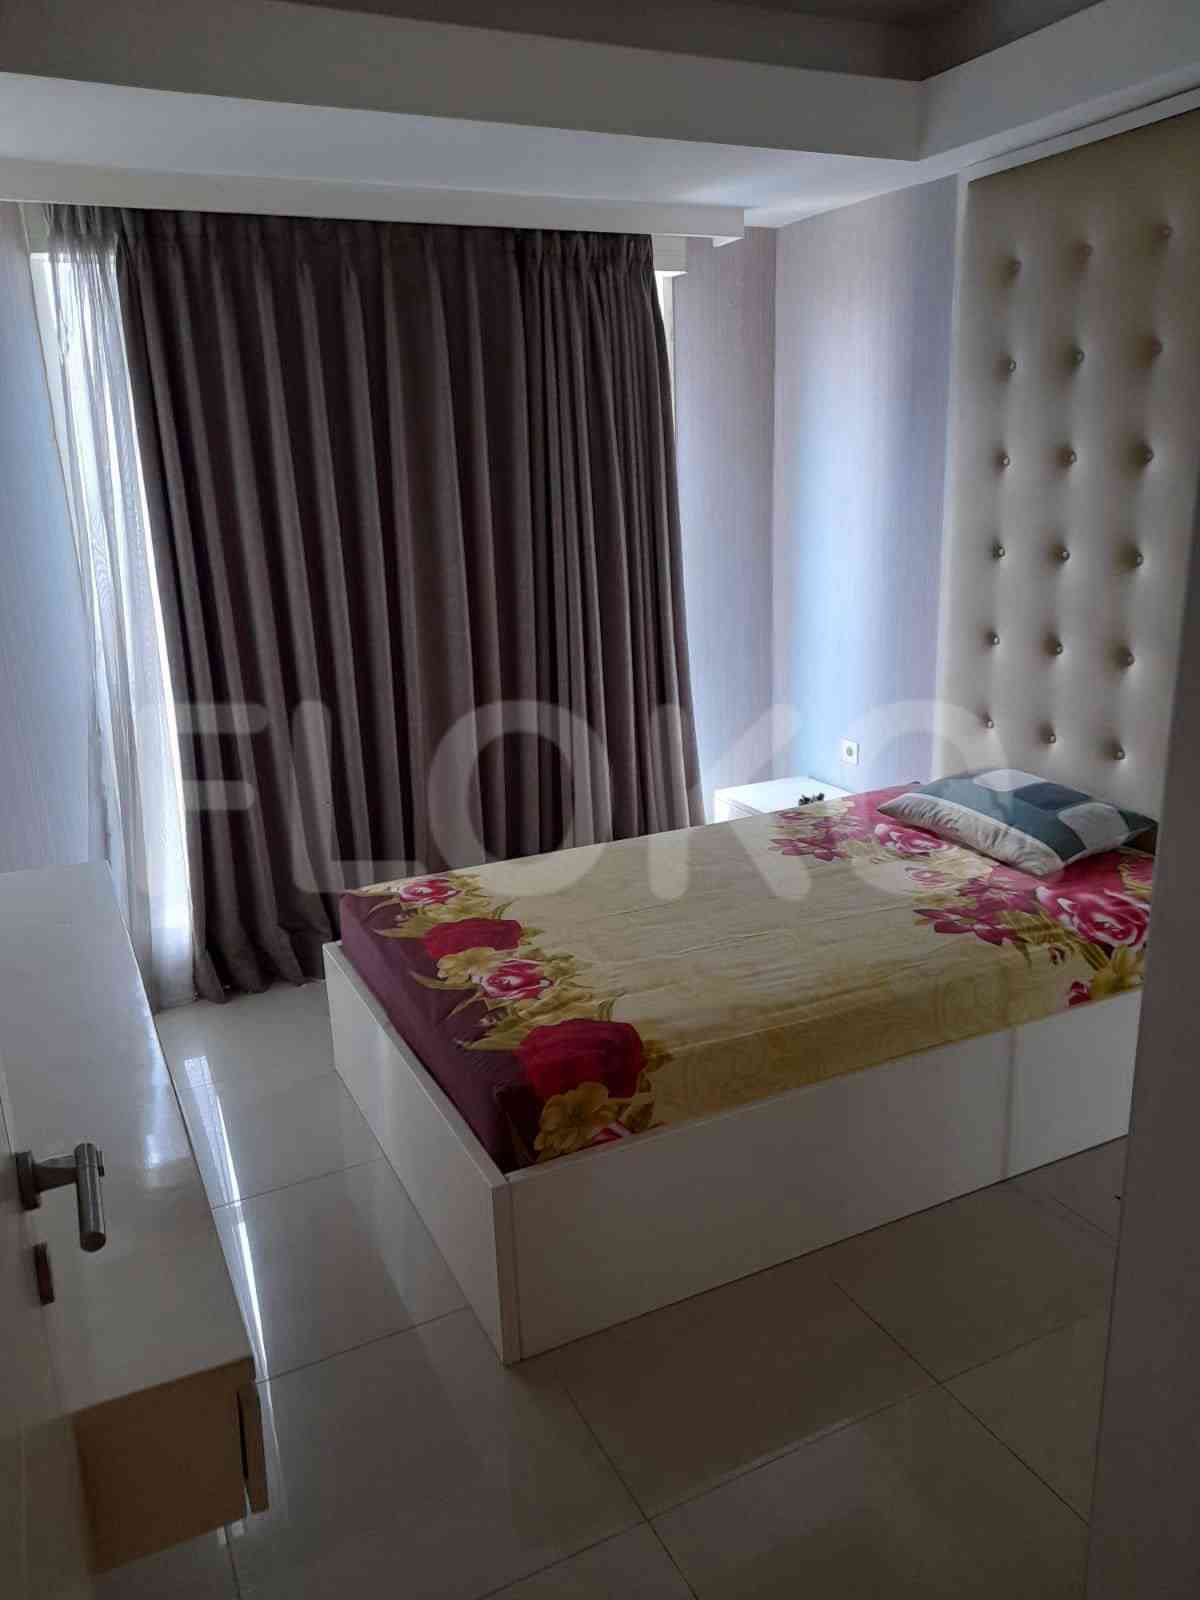 4 Bedroom on 10th Floor for Rent in Casa Grande - ftef92 4